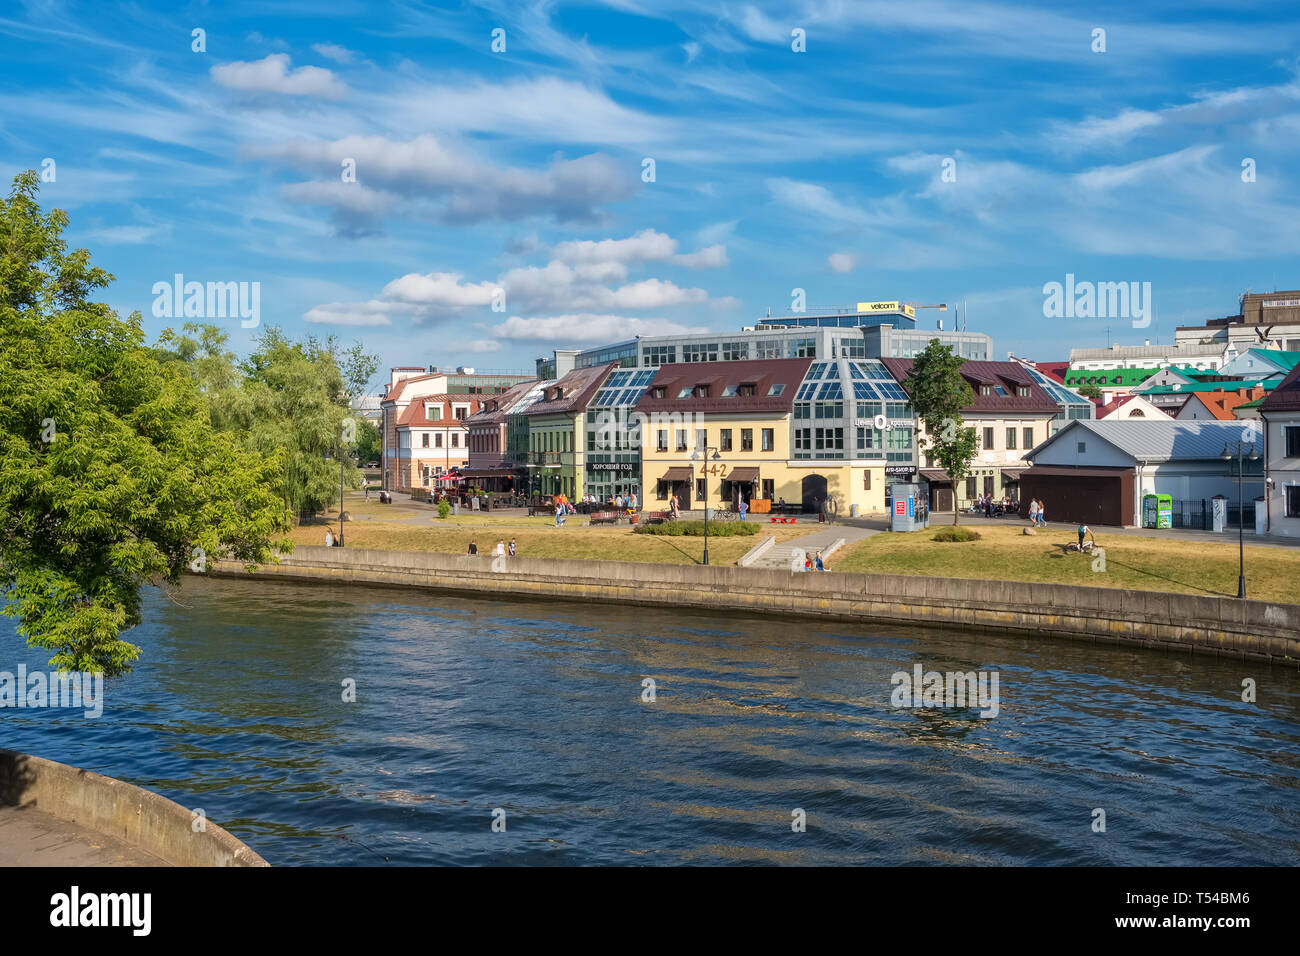 Biélorussie, Minsk - 17 juin 2018 : vue d'été de la célèbre rivière Svisloch et Zybickaja street dans le centre-ville de Minsk, Bélarus Banque D'Images